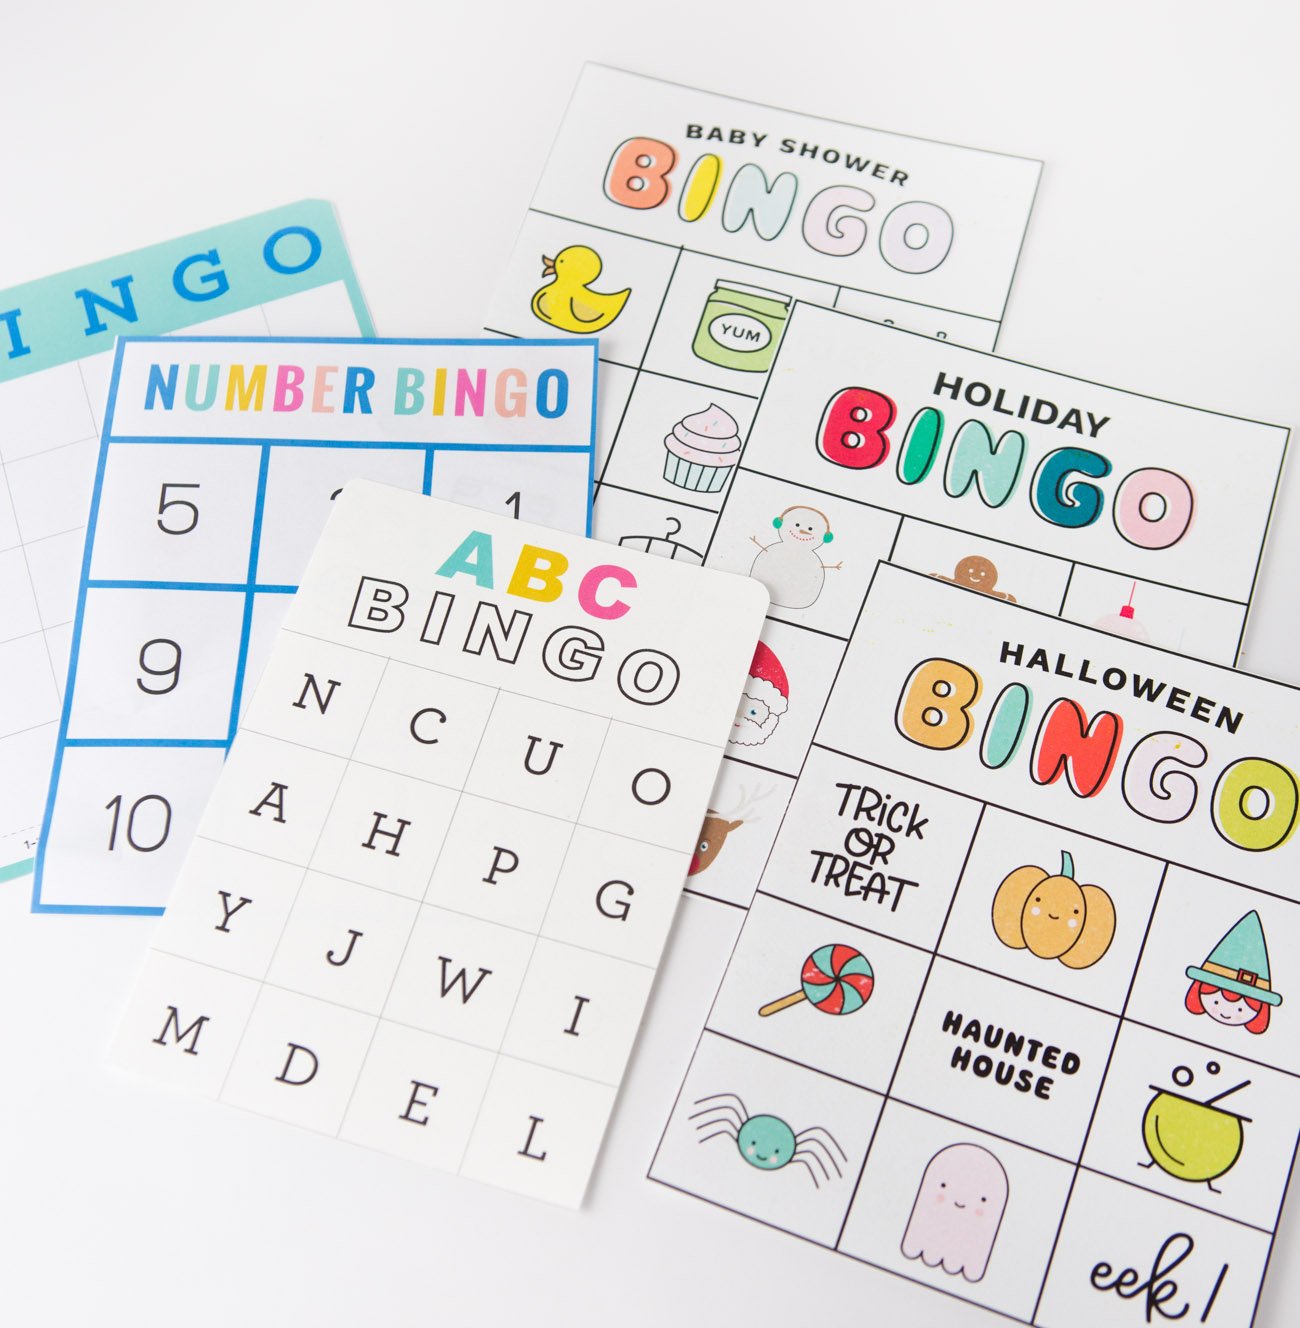 6 free printable bingo cards: blank bingo, number bingo, alphabet bingo, baby shower bingo, holiday bingo, and halloween bingo